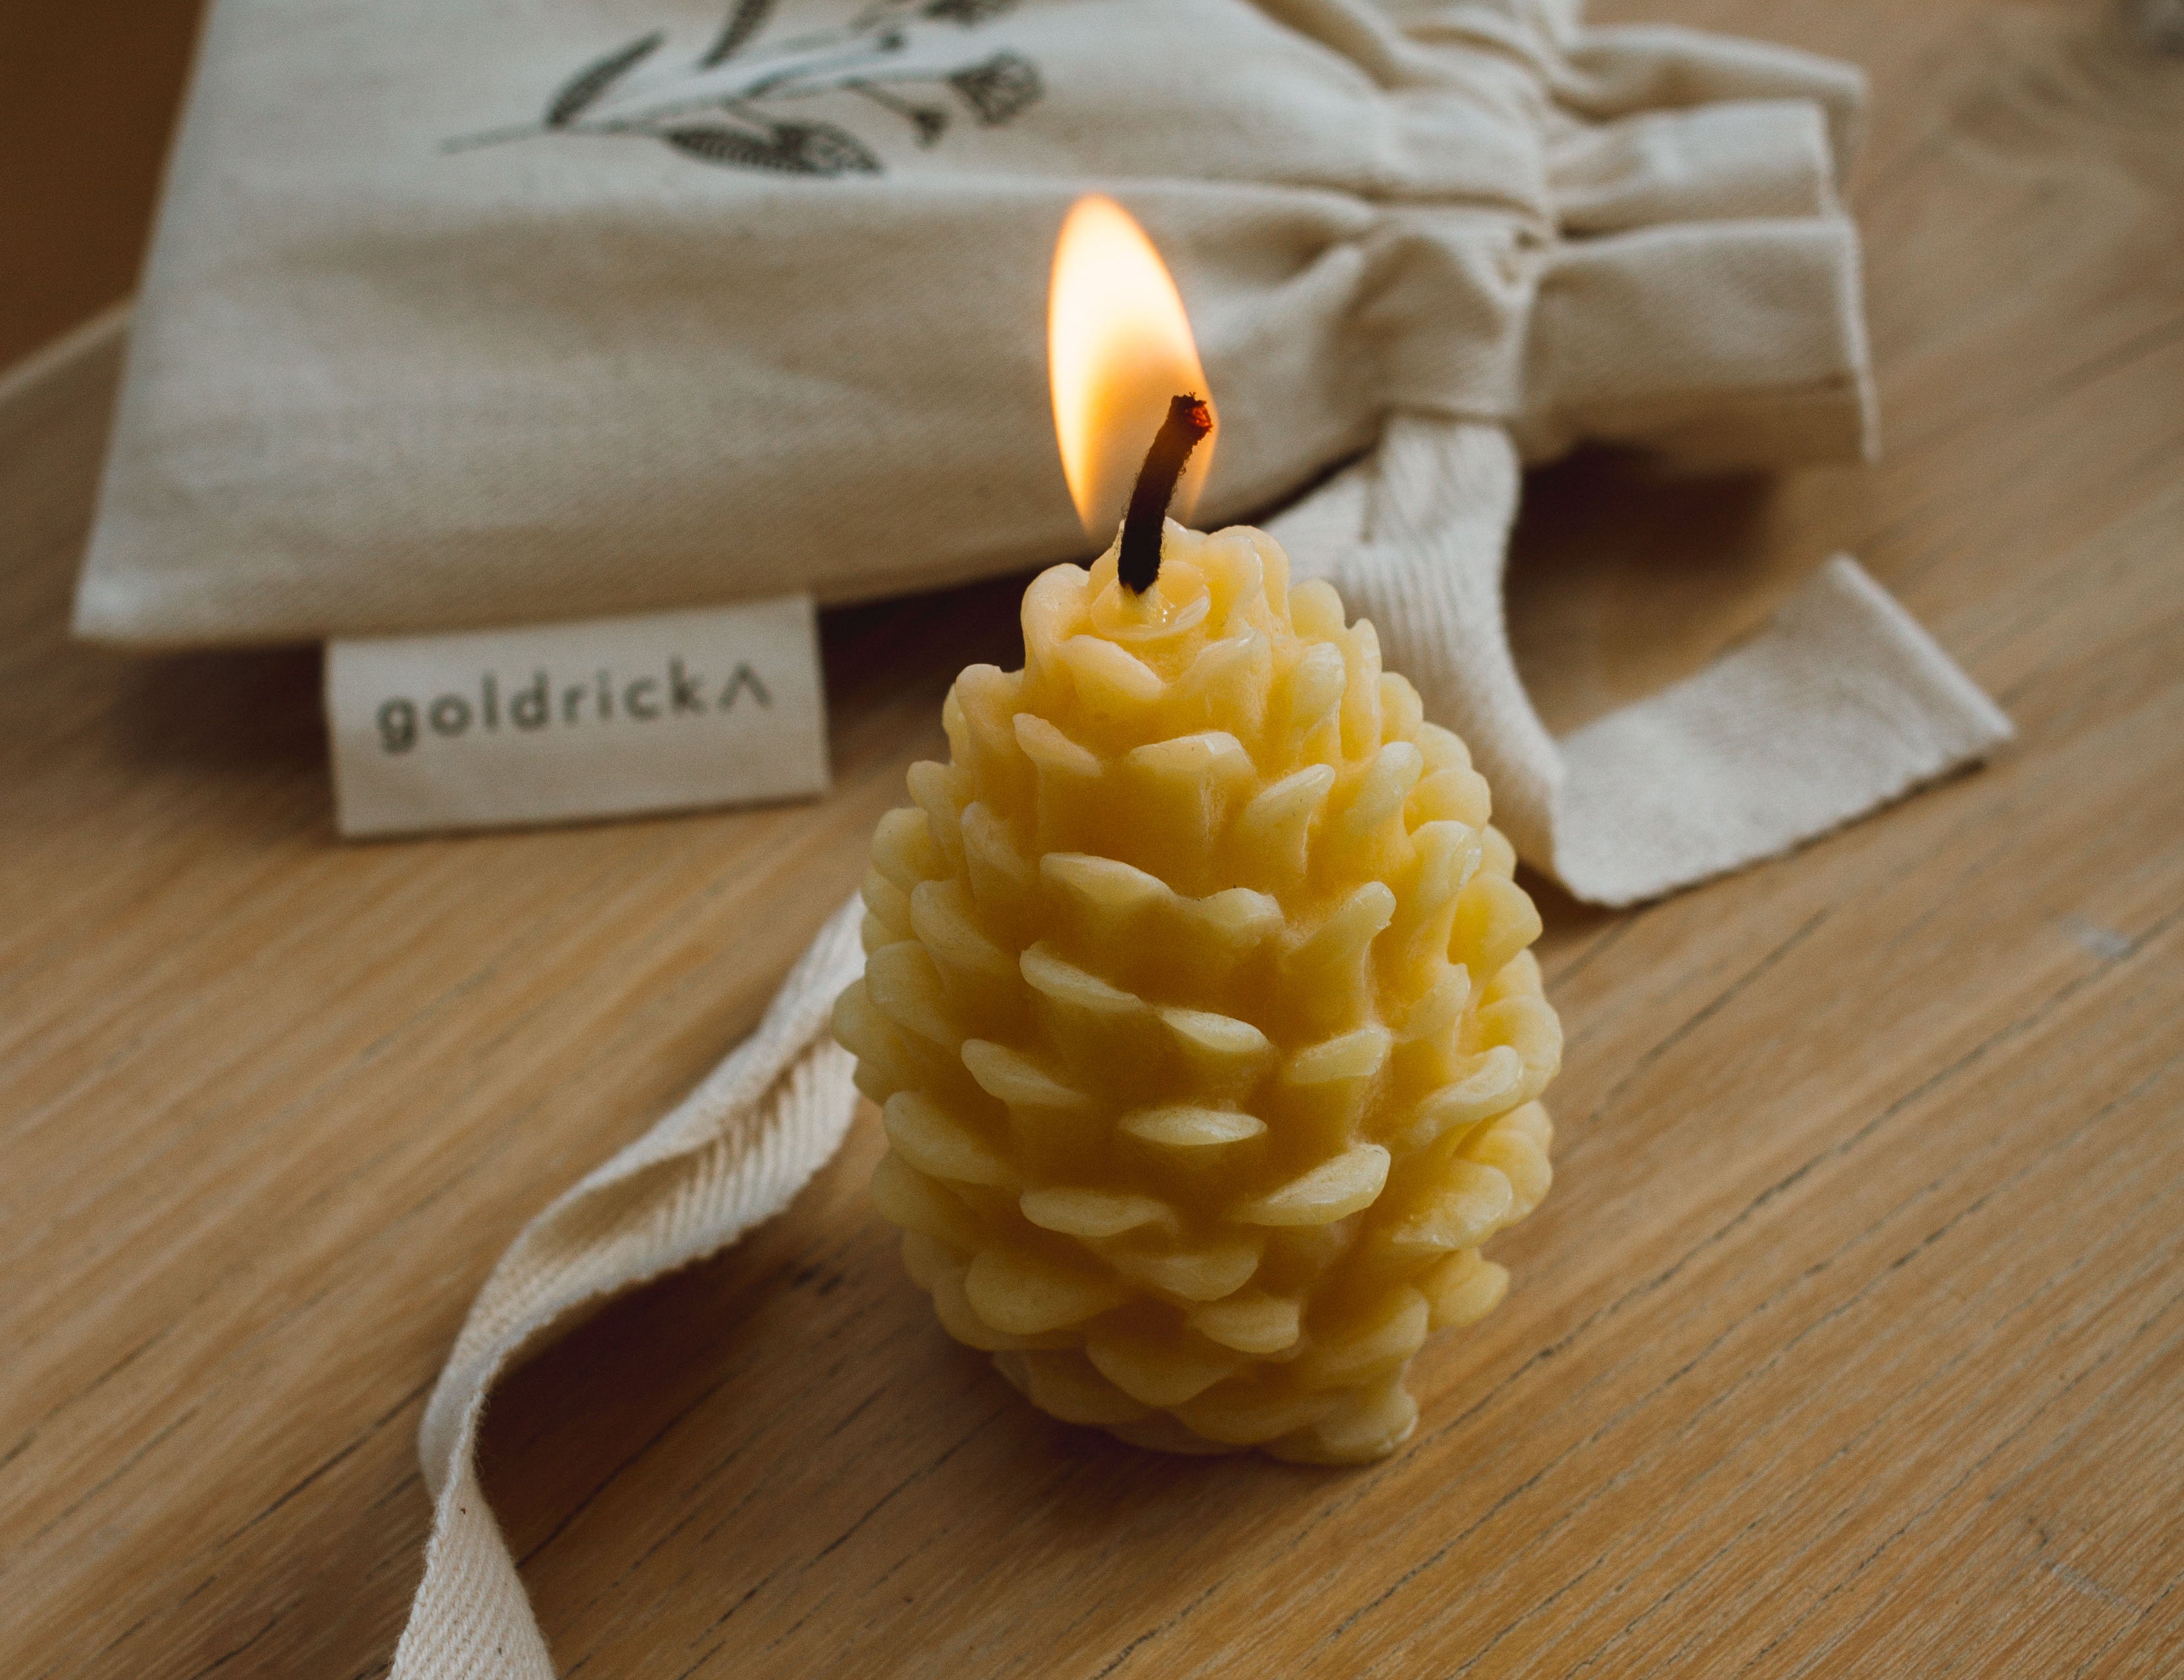 Goldrick Natural Living - Beeswax Candle Making Kit – Fashion